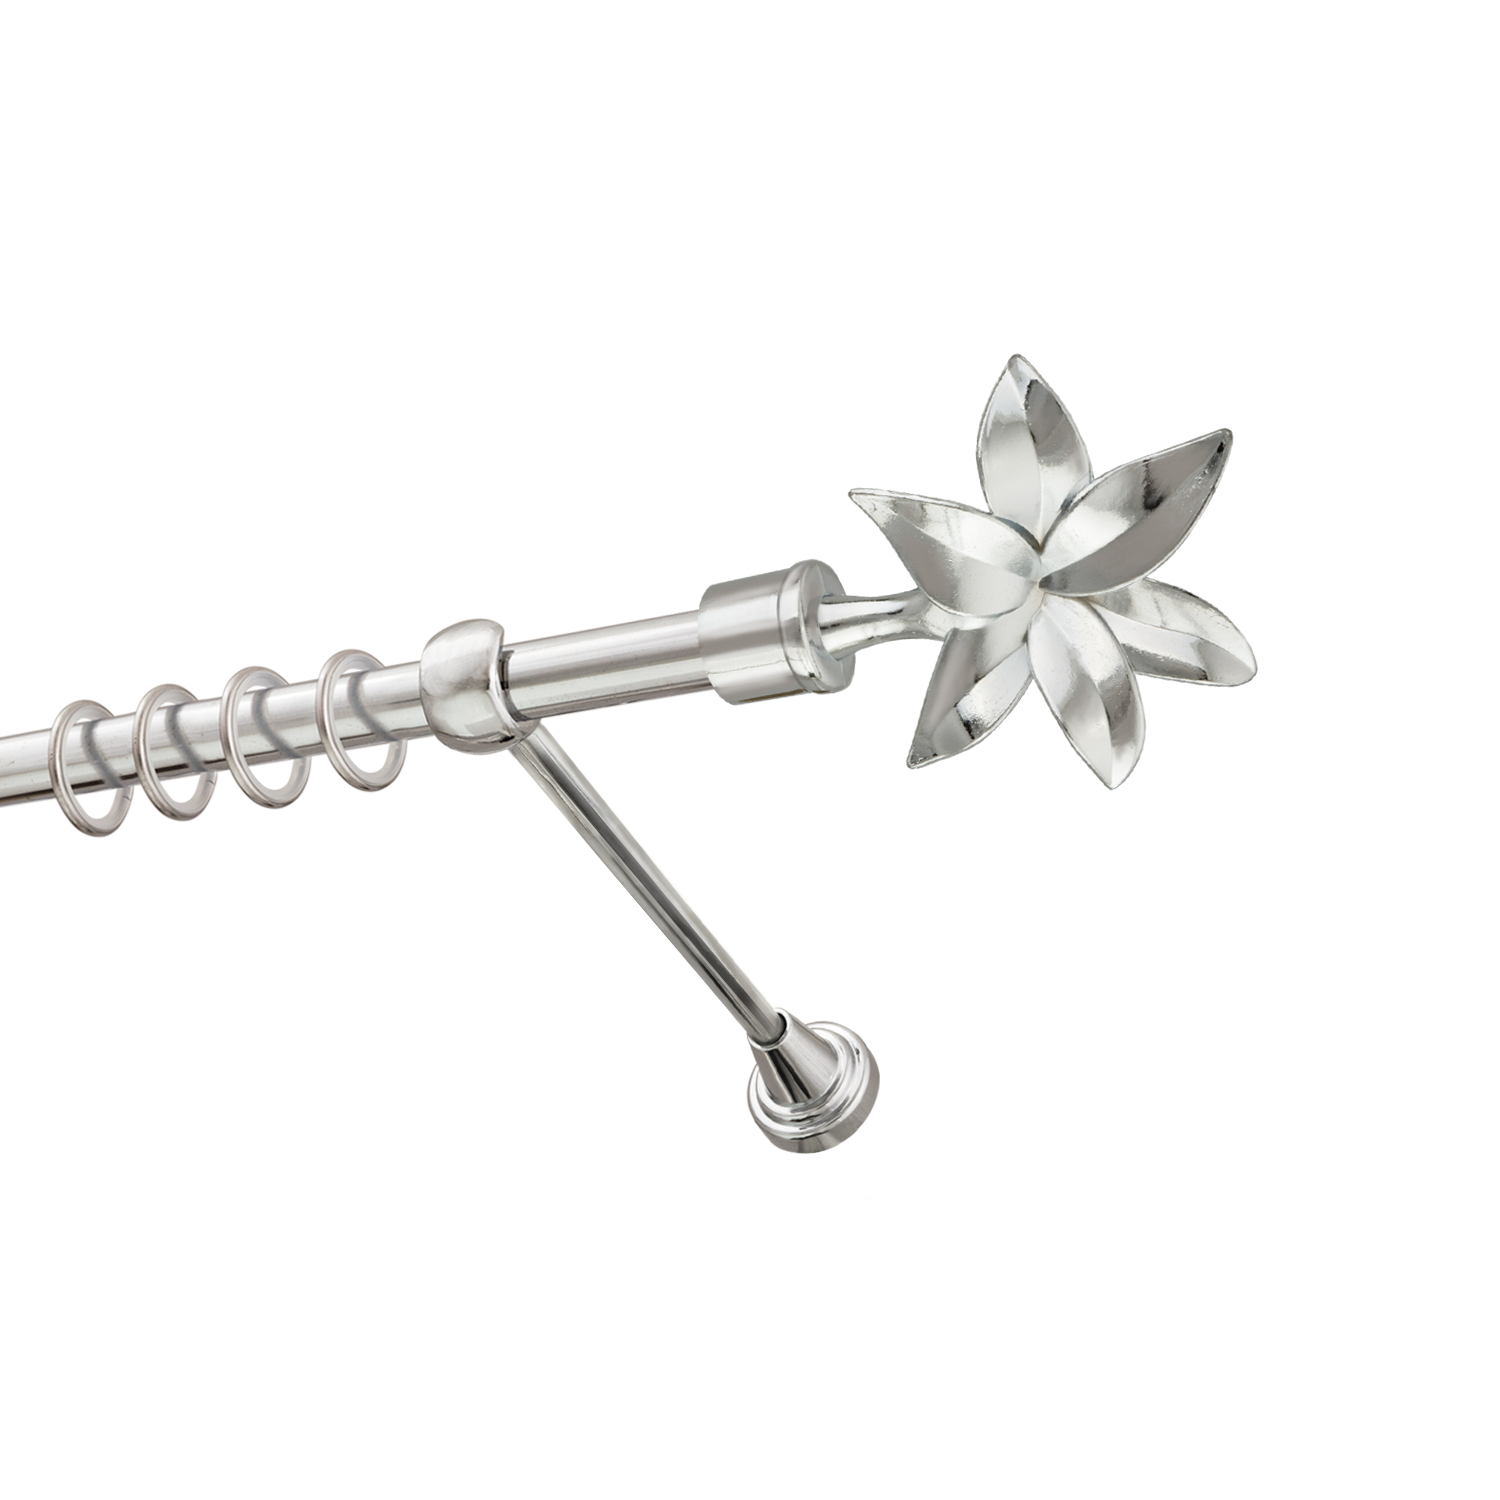 Металлический карниз для штор Магнолия, однорядный 16 мм, серебро, гладкая штанга, длина 160 см - фото Wikidecor.ru